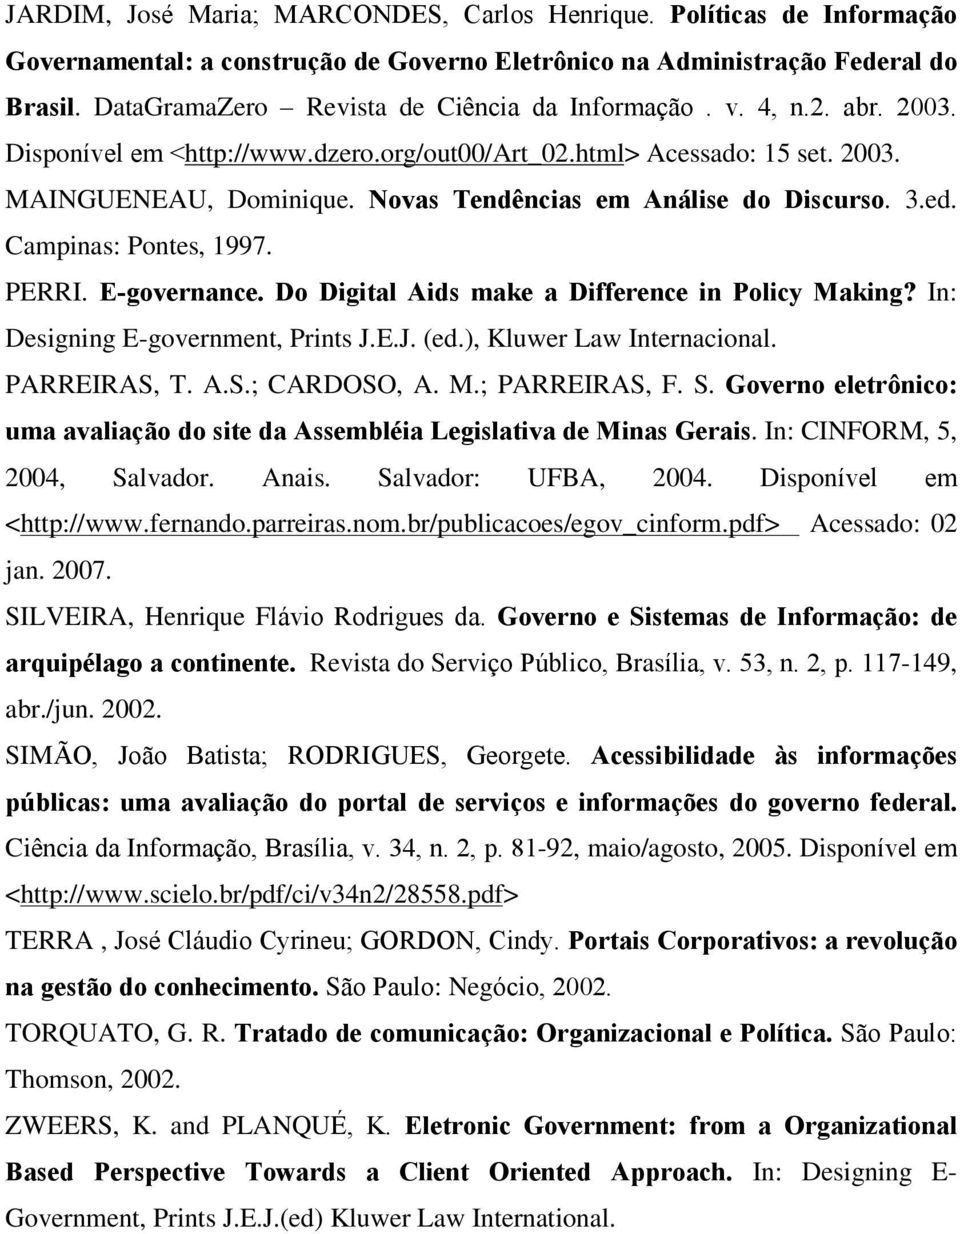 Novas Tendências em Análise do Discurso. 3.ed. Campinas: Pontes, 1997. PERRI. E-governance. Do Digital Aids make a Difference in Policy Making? In: Designing E-government, Prints J.E.J. (ed.